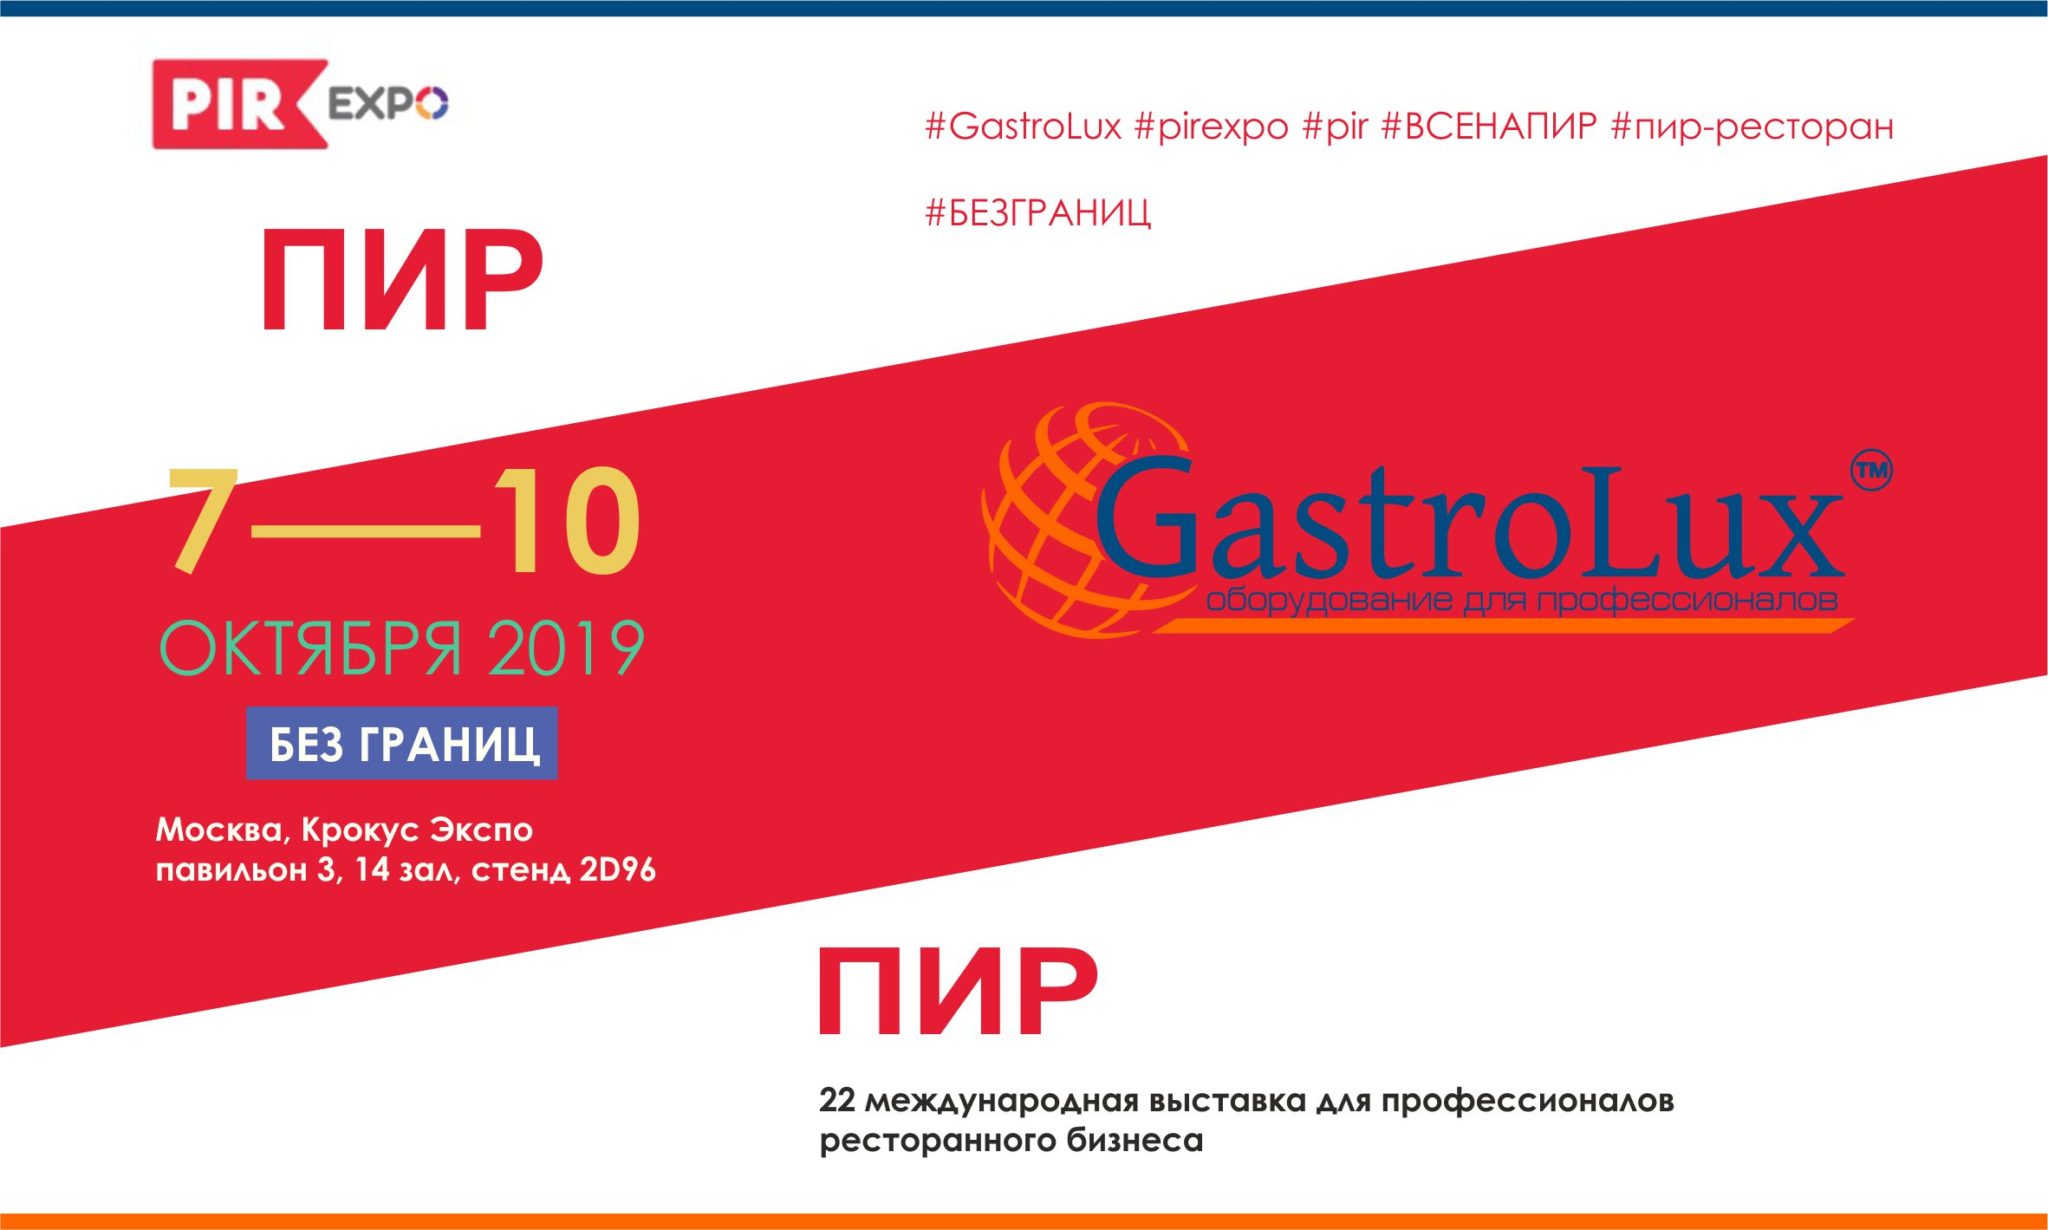 Компания GastroLux™ приглашает Вас на ПИР 2019!